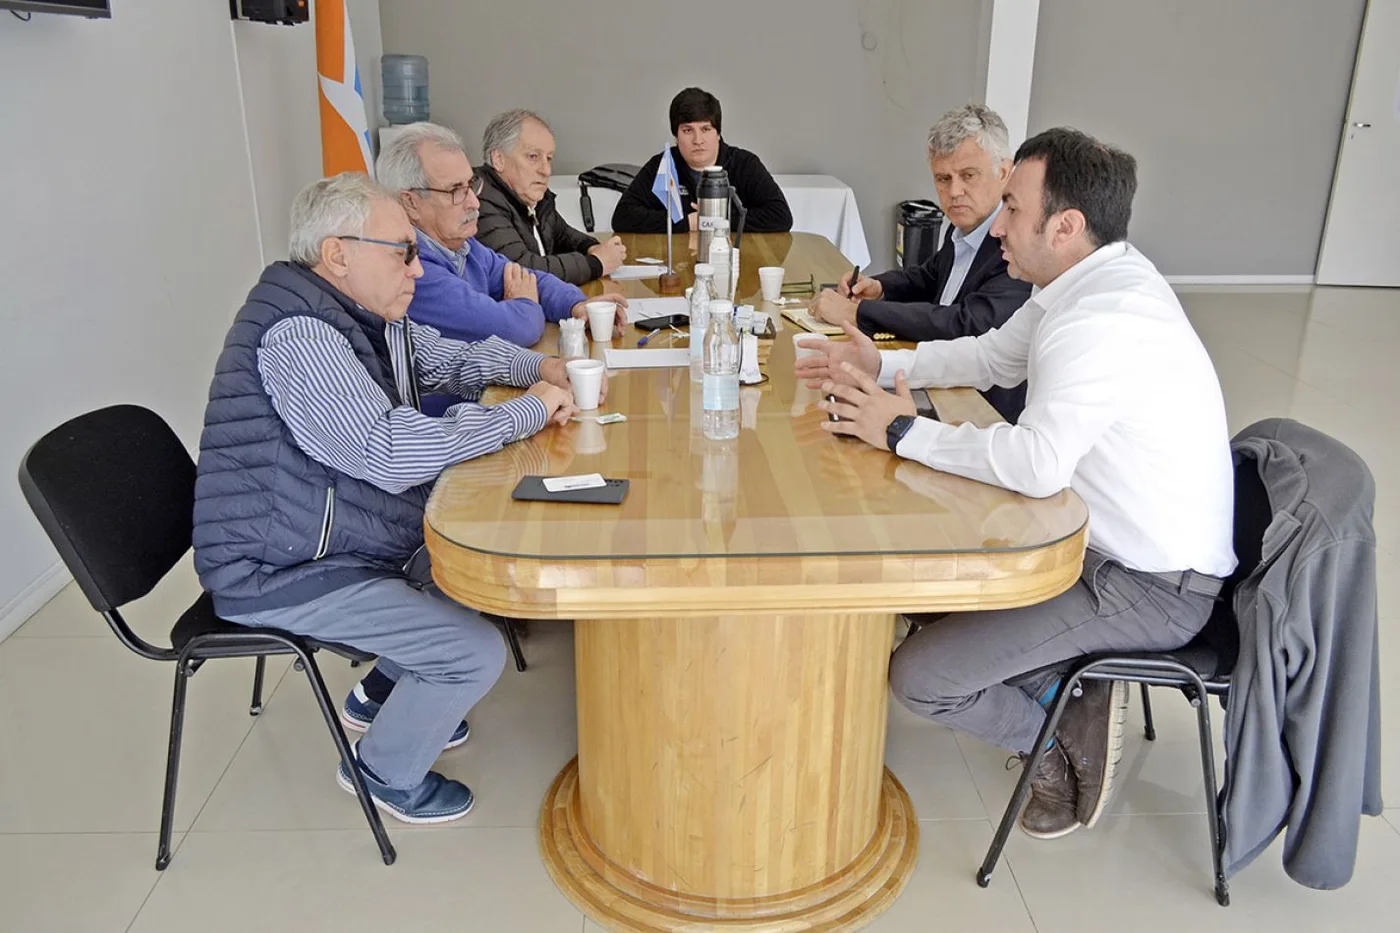 El Cónsul de Chile, junto al Gerente de Tabsa, en reunión con integrantes de la Cámara de Comercio de Río Grande y de la Cámara del Transporte.